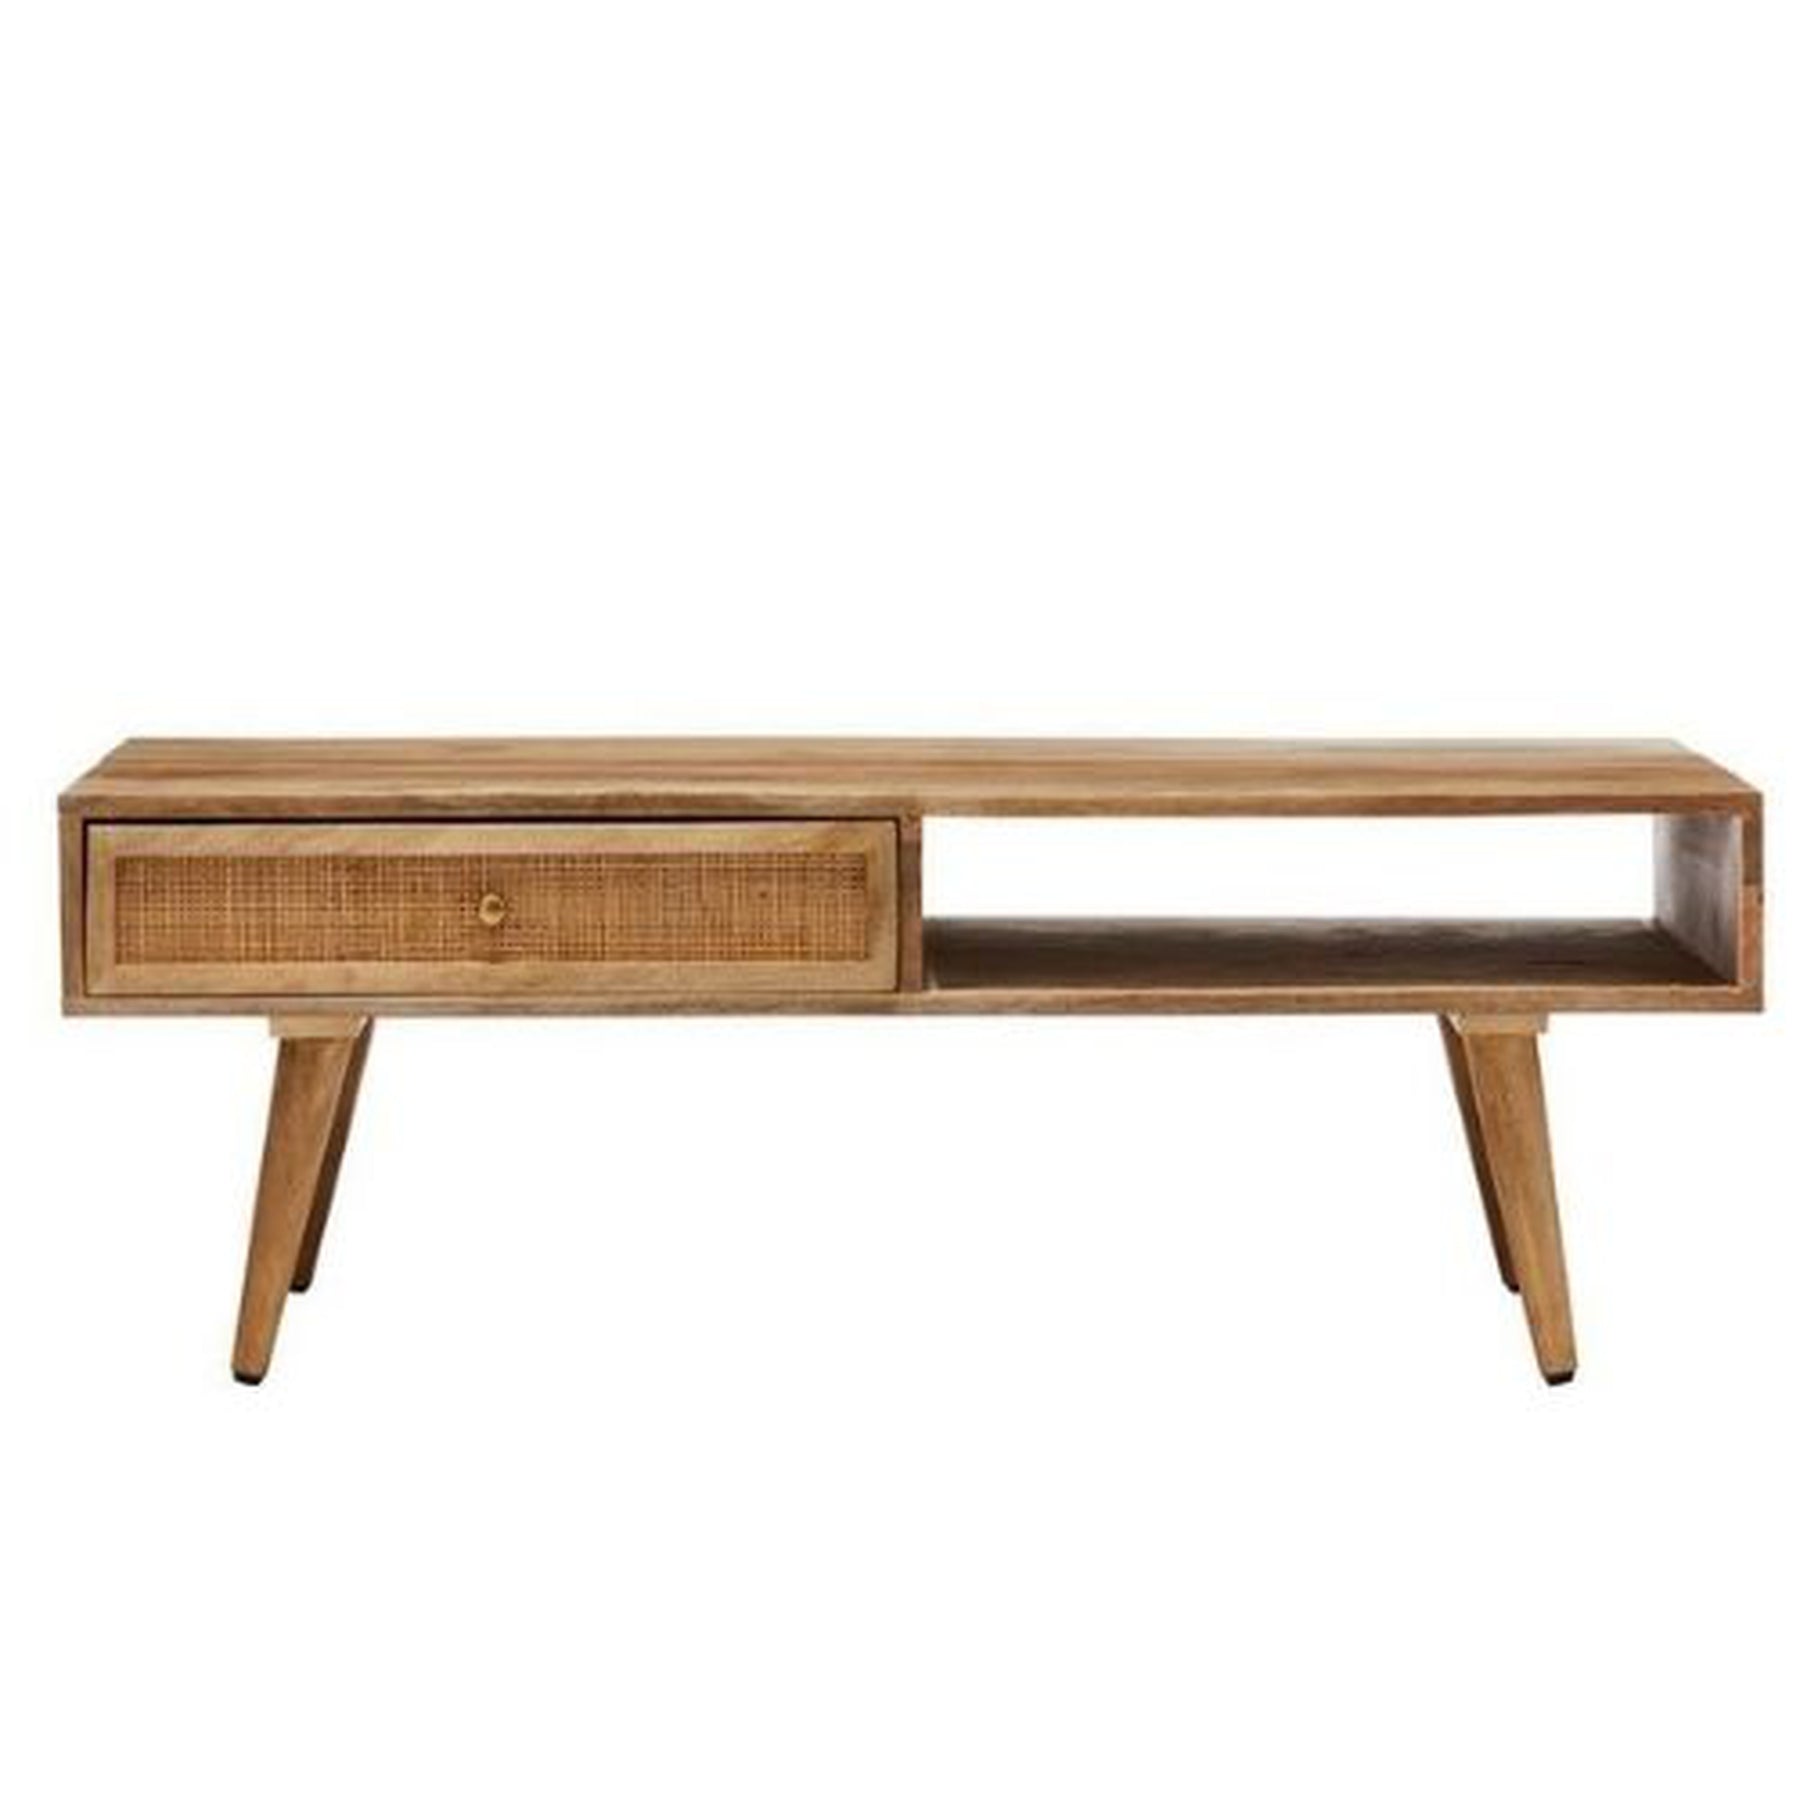 Table basse en paille de bois 1 tiroir étagère ouverte - Table basse - Table basse moderne